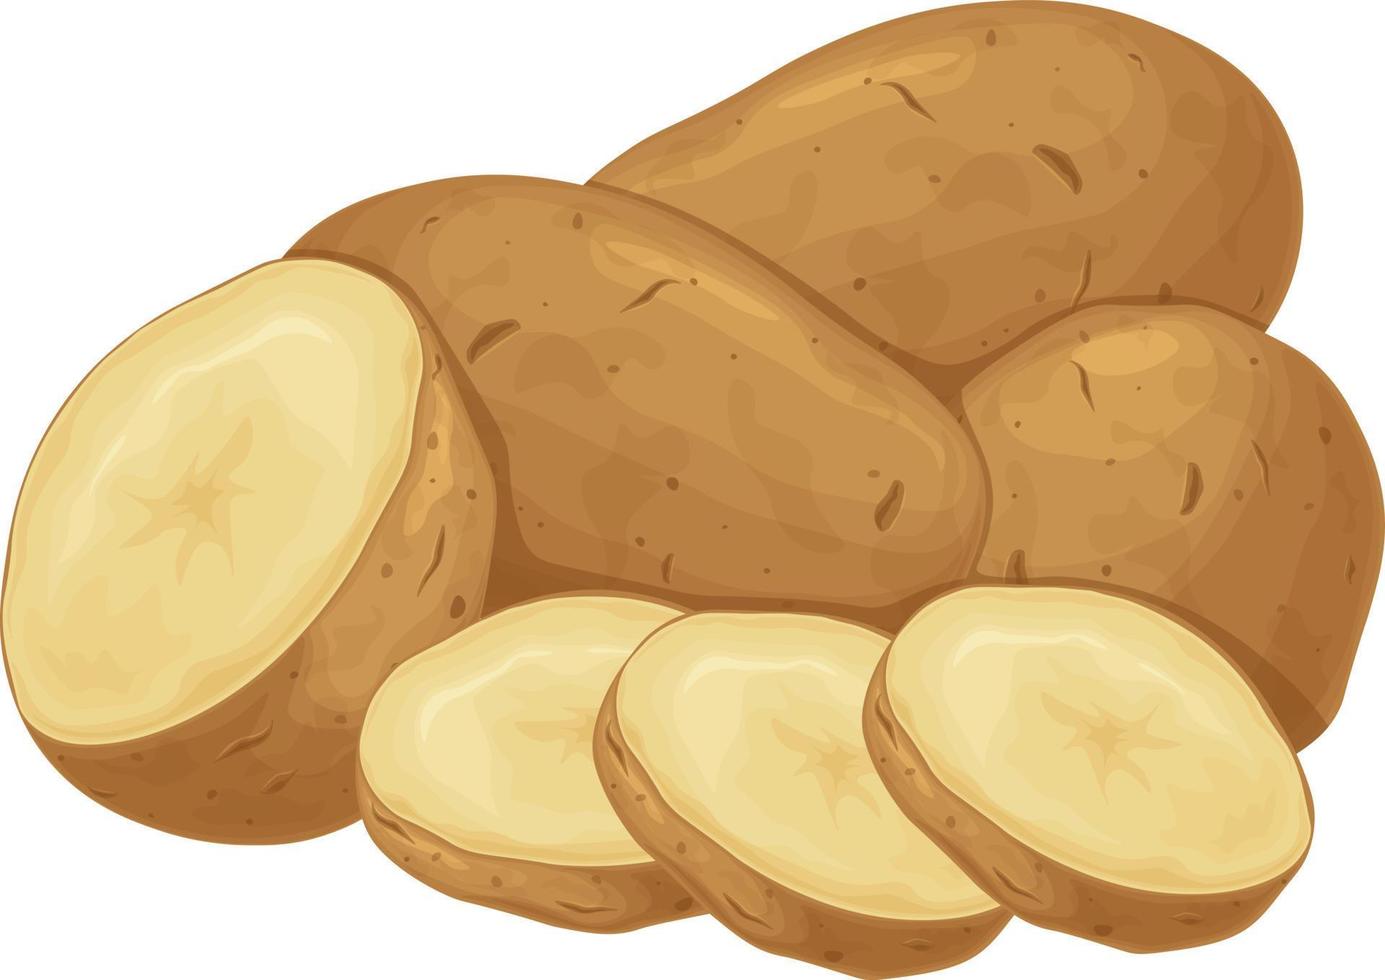 batata. tubérculos de batata. um vegetal maduro. produto vegetariano. batatas fatiadas. ilustração vetorial isolada em um fundo branco vetor